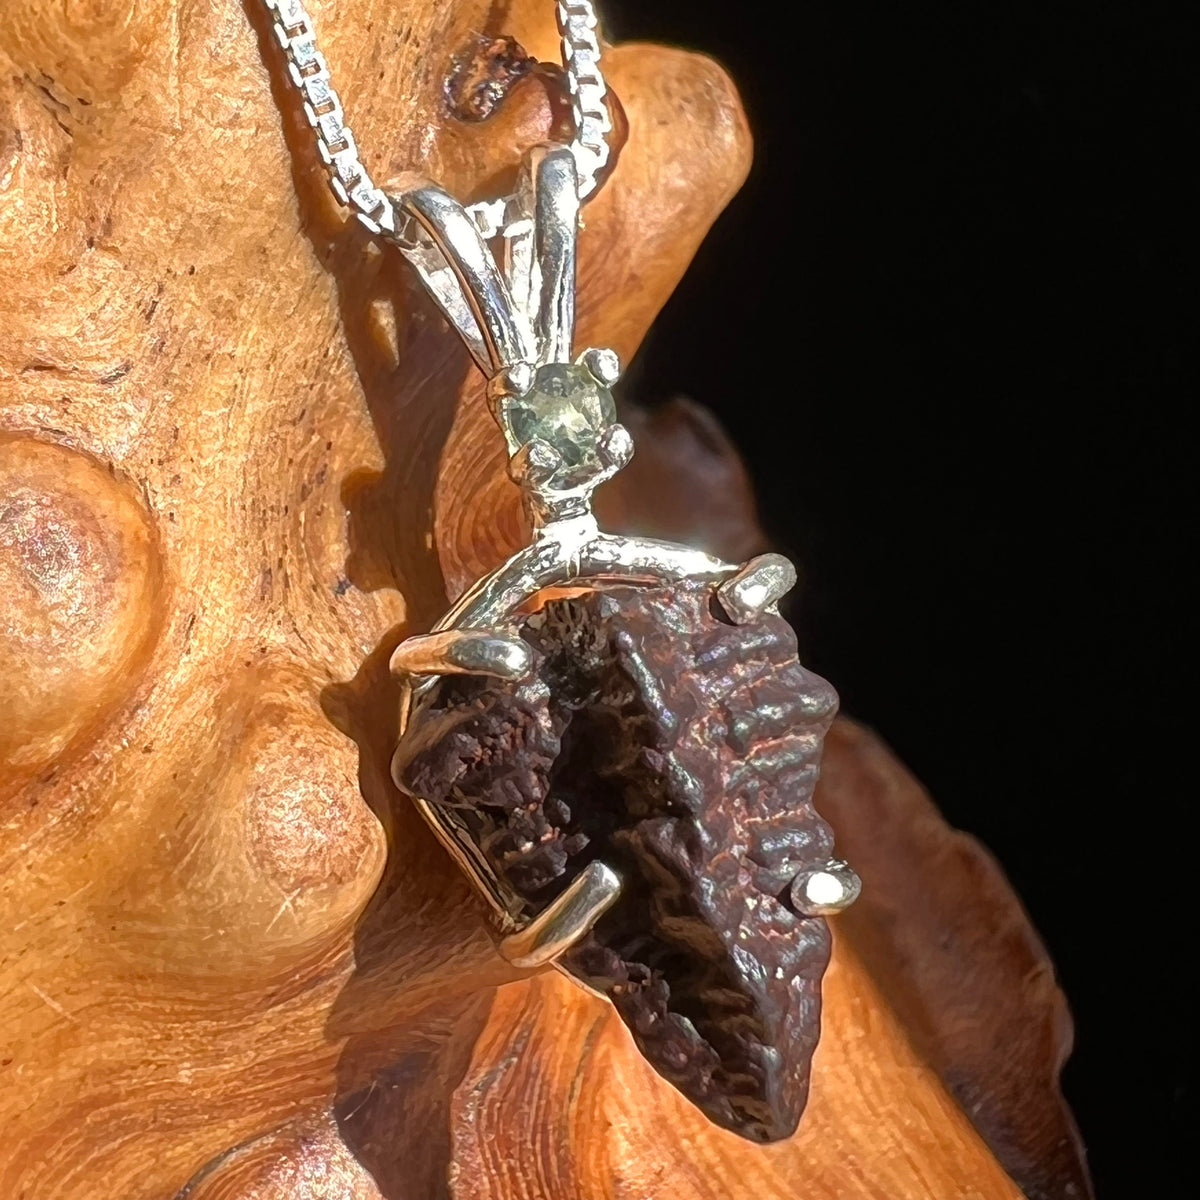 Prophecy Stone & Moldavite Necklace Silver #2644-Moldavite Life